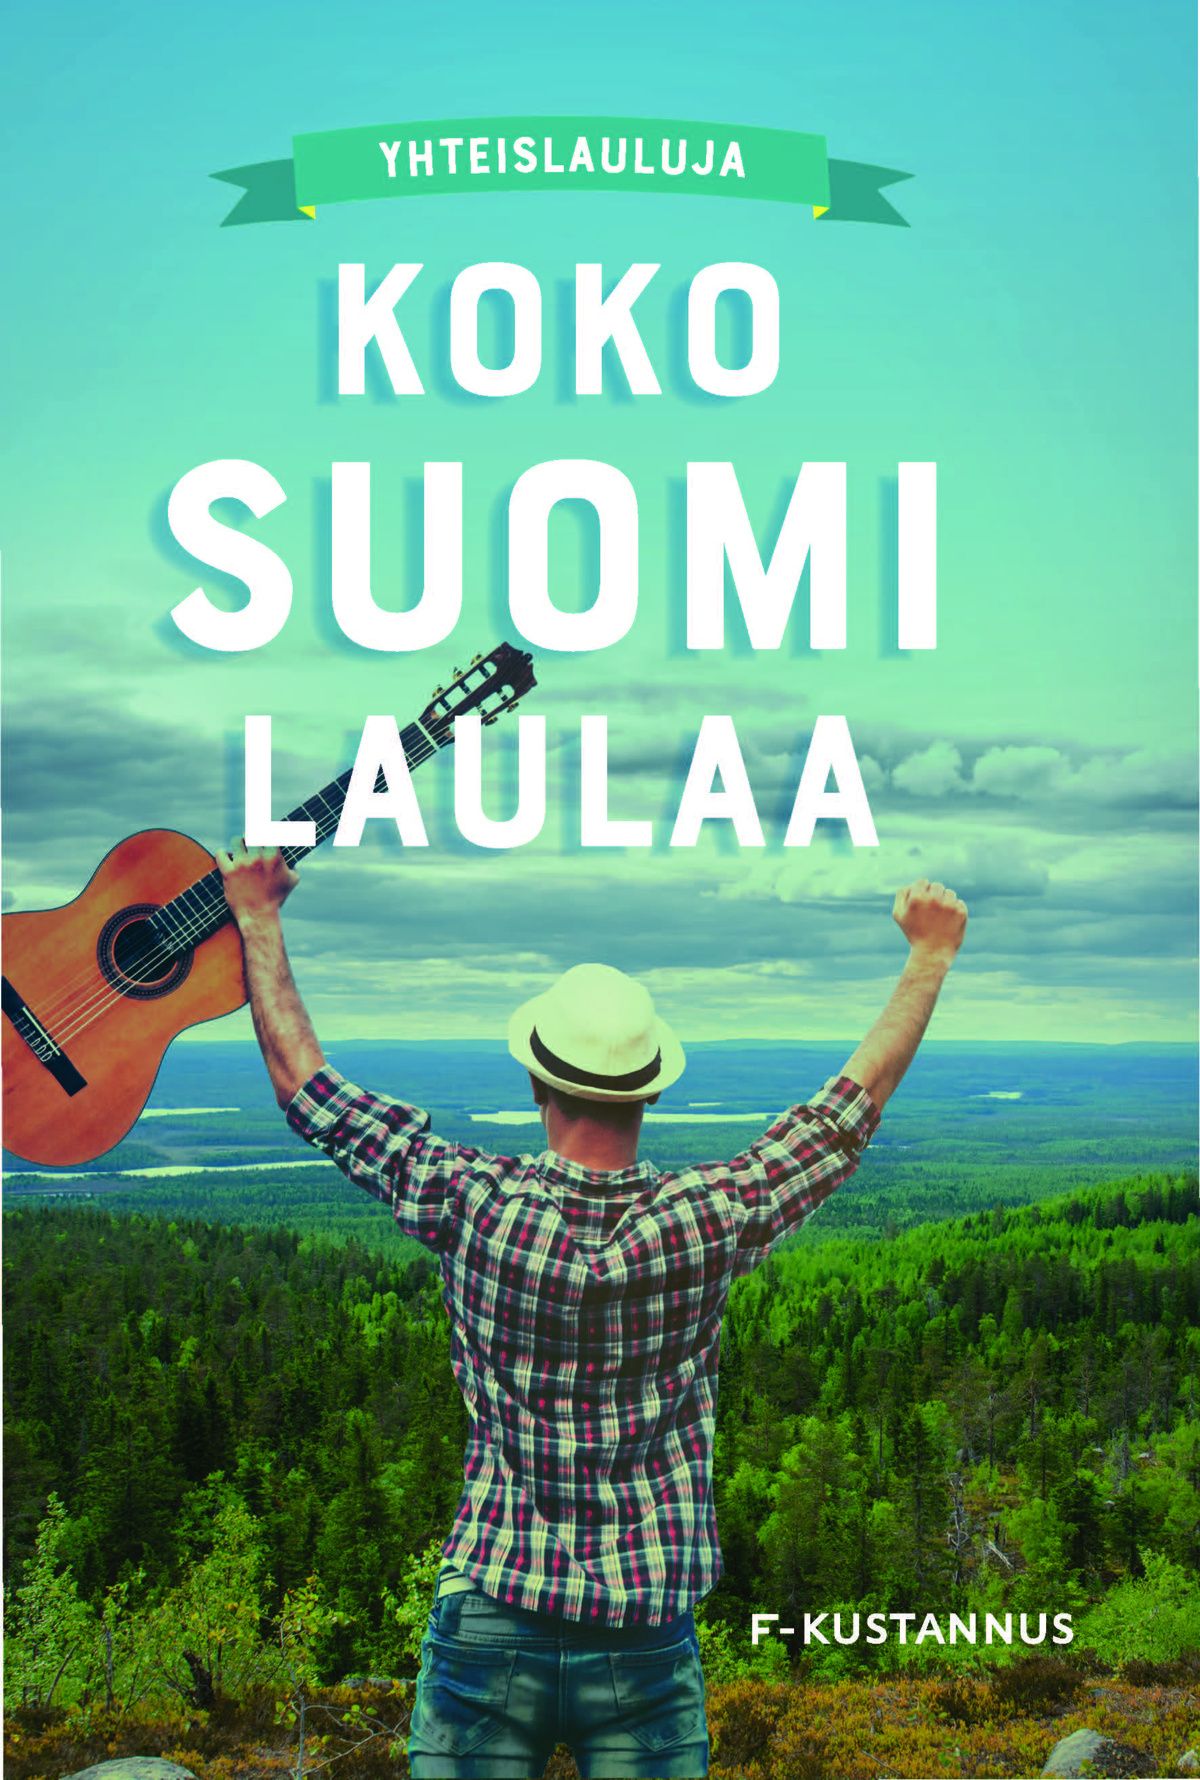 Ari Leskelä : Koko Suomi laulaa – yhteislauluja